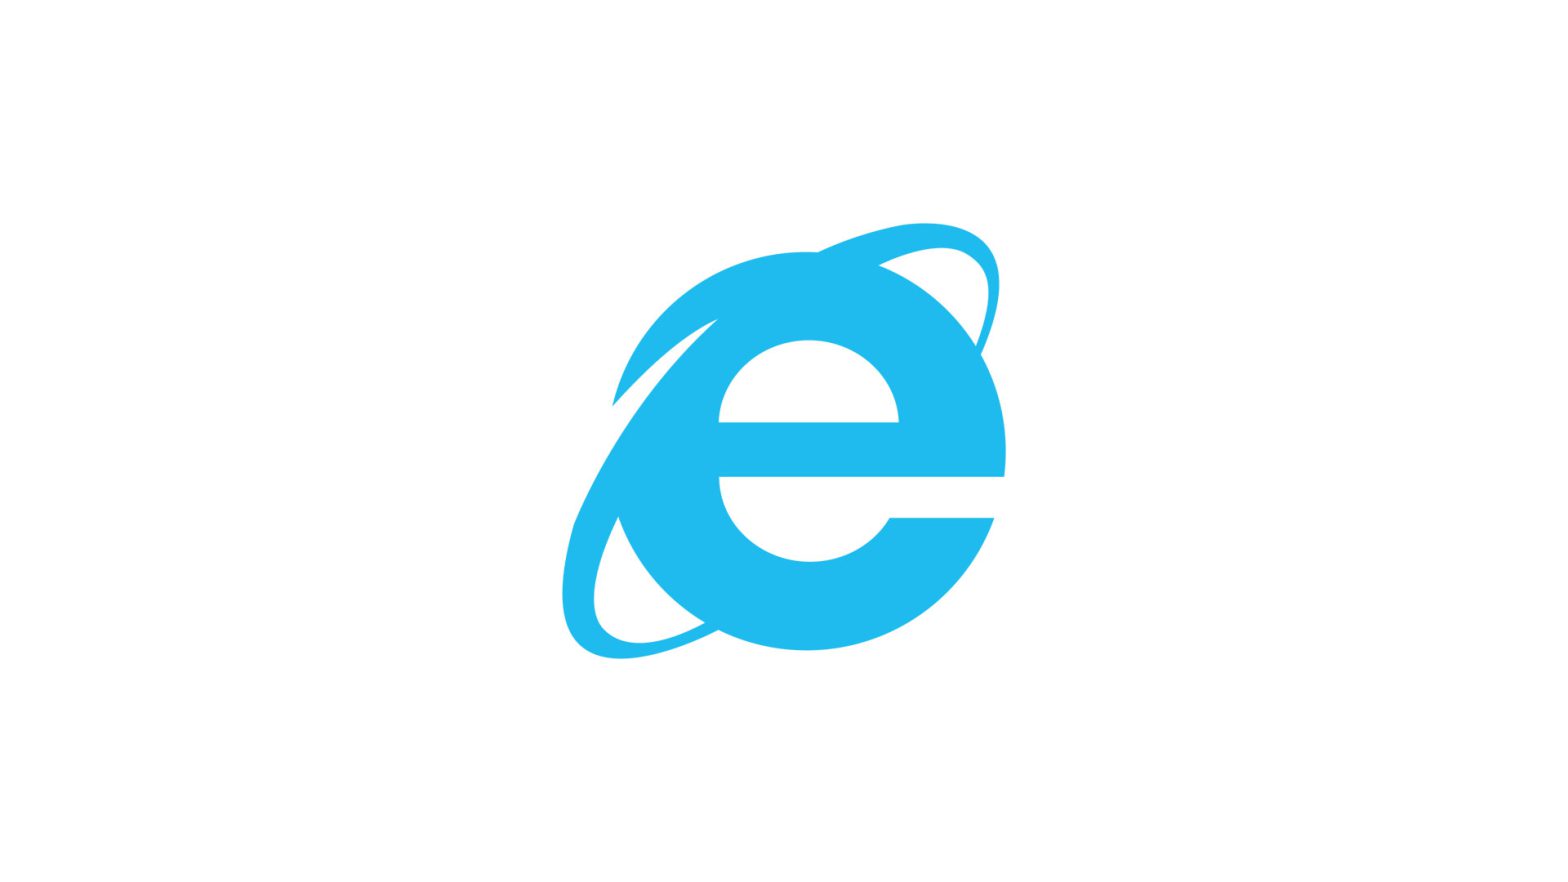 Font-Face Internet Explorer Problems